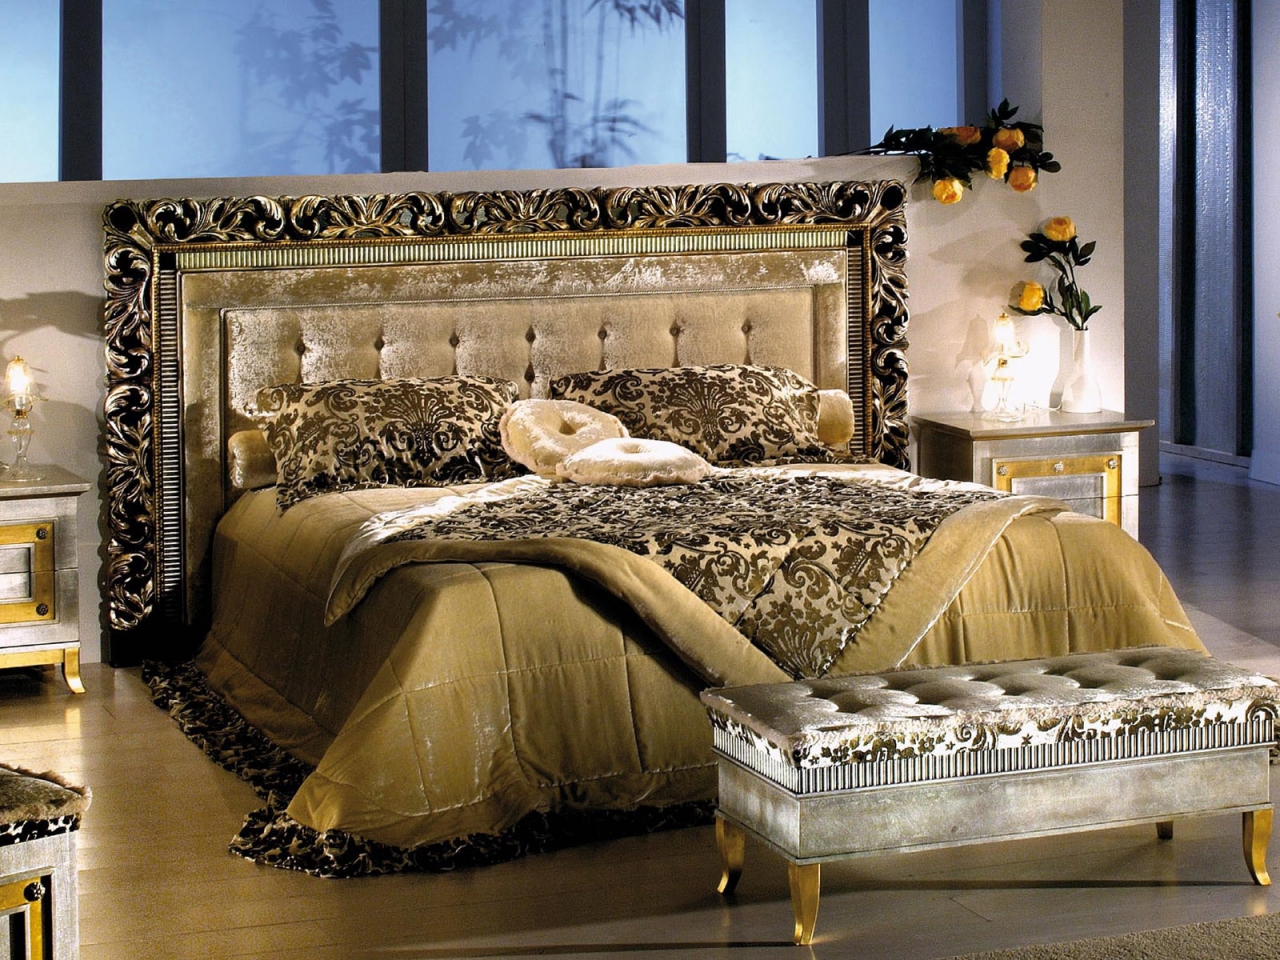 Bedroom in velvet for 1280 x 960 resolution